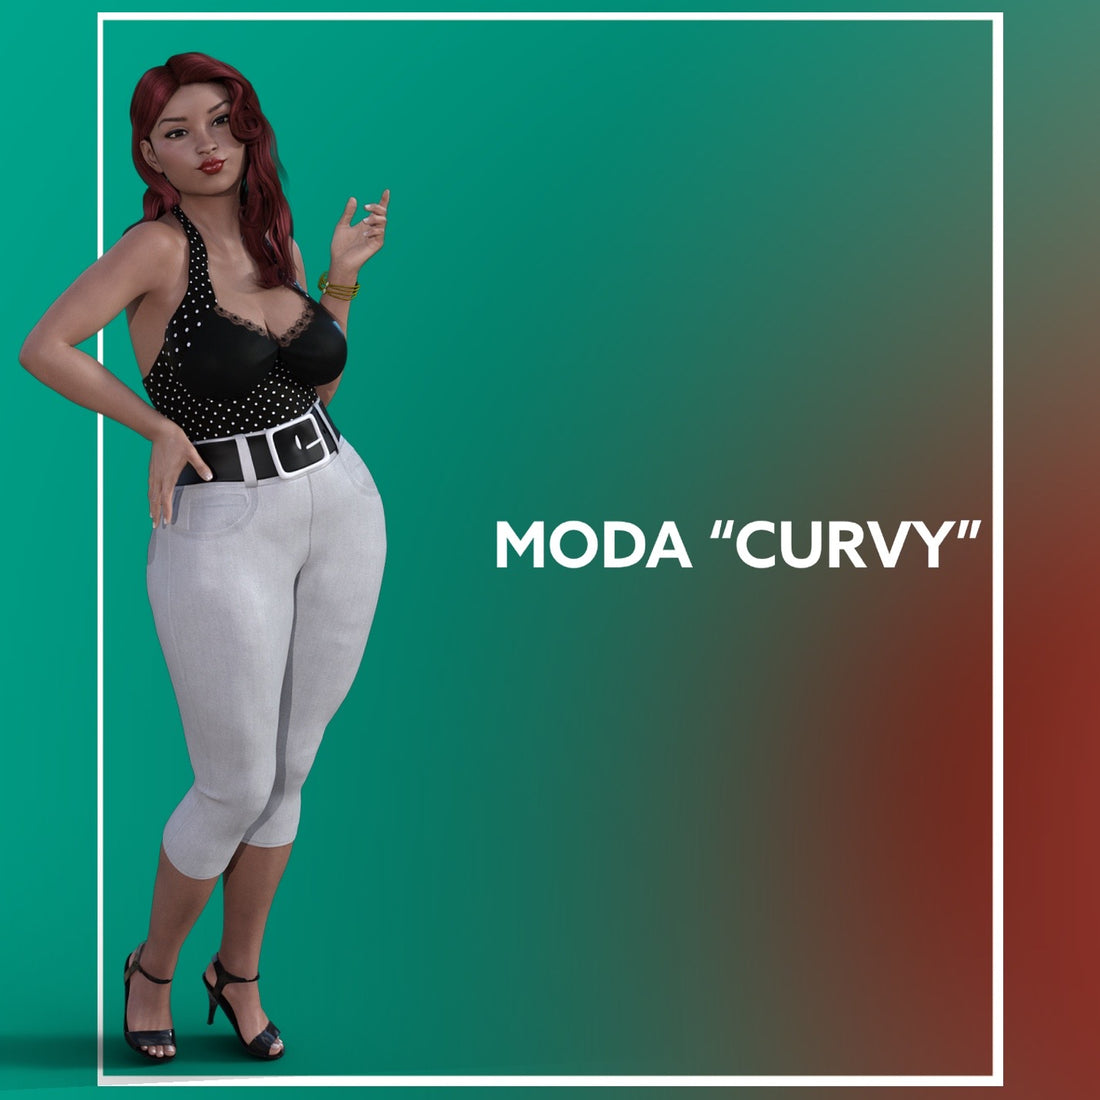 ¿Qué es la moda “curvy”? ¿Es un término despectivo? ¿Es lo mismo que las tallas grandes?